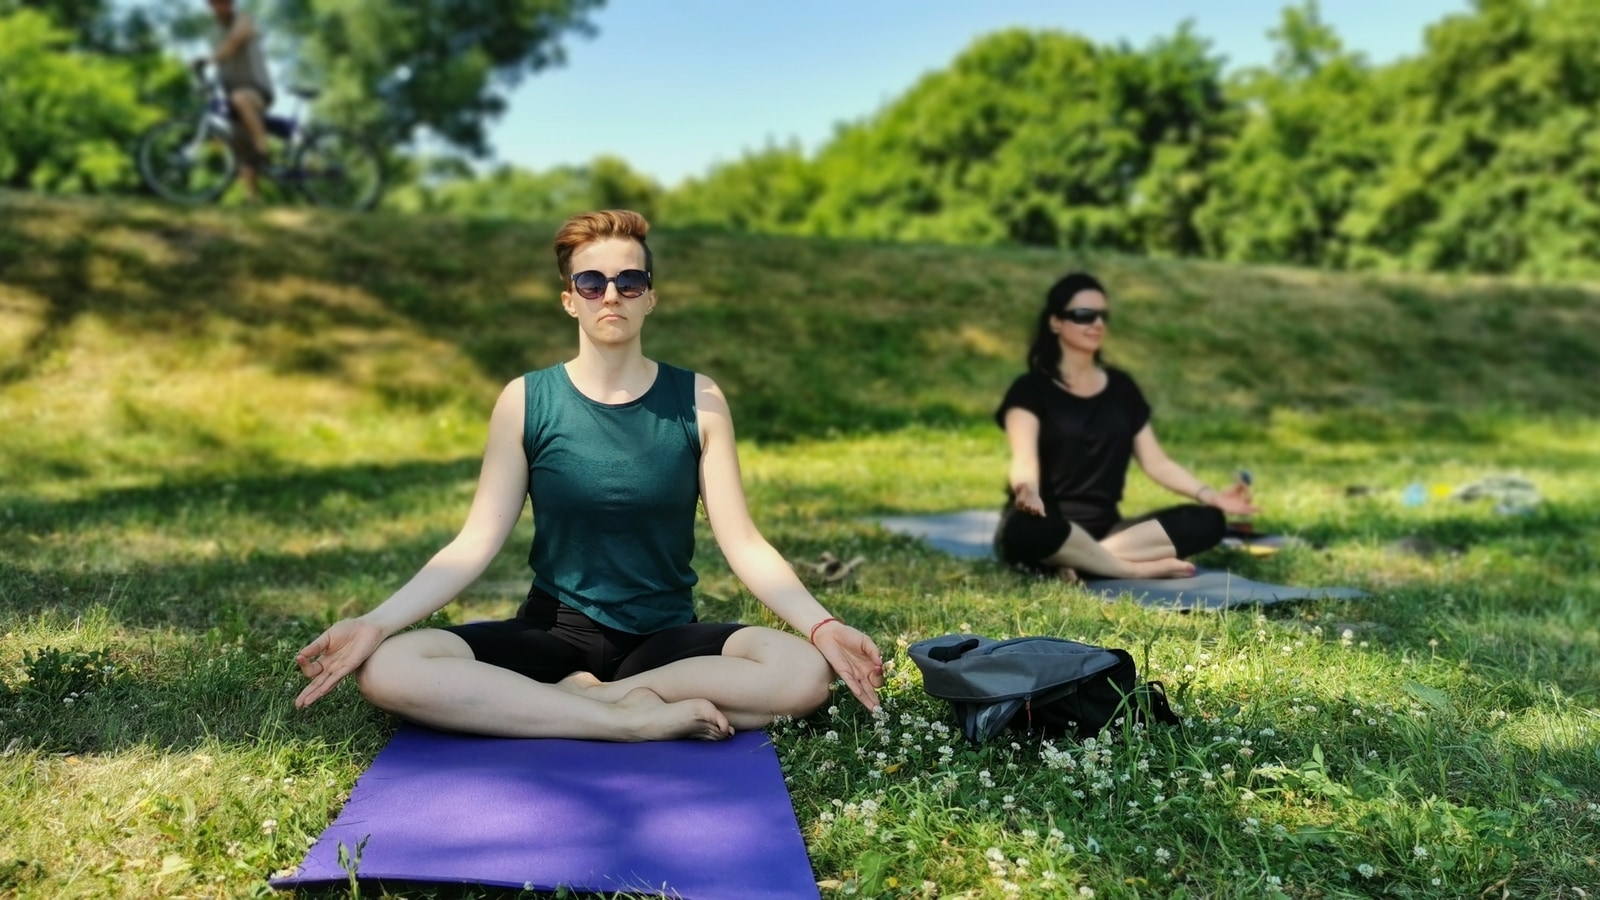 Crane Pose and Anatomy: How to Practice - YogaUOnline